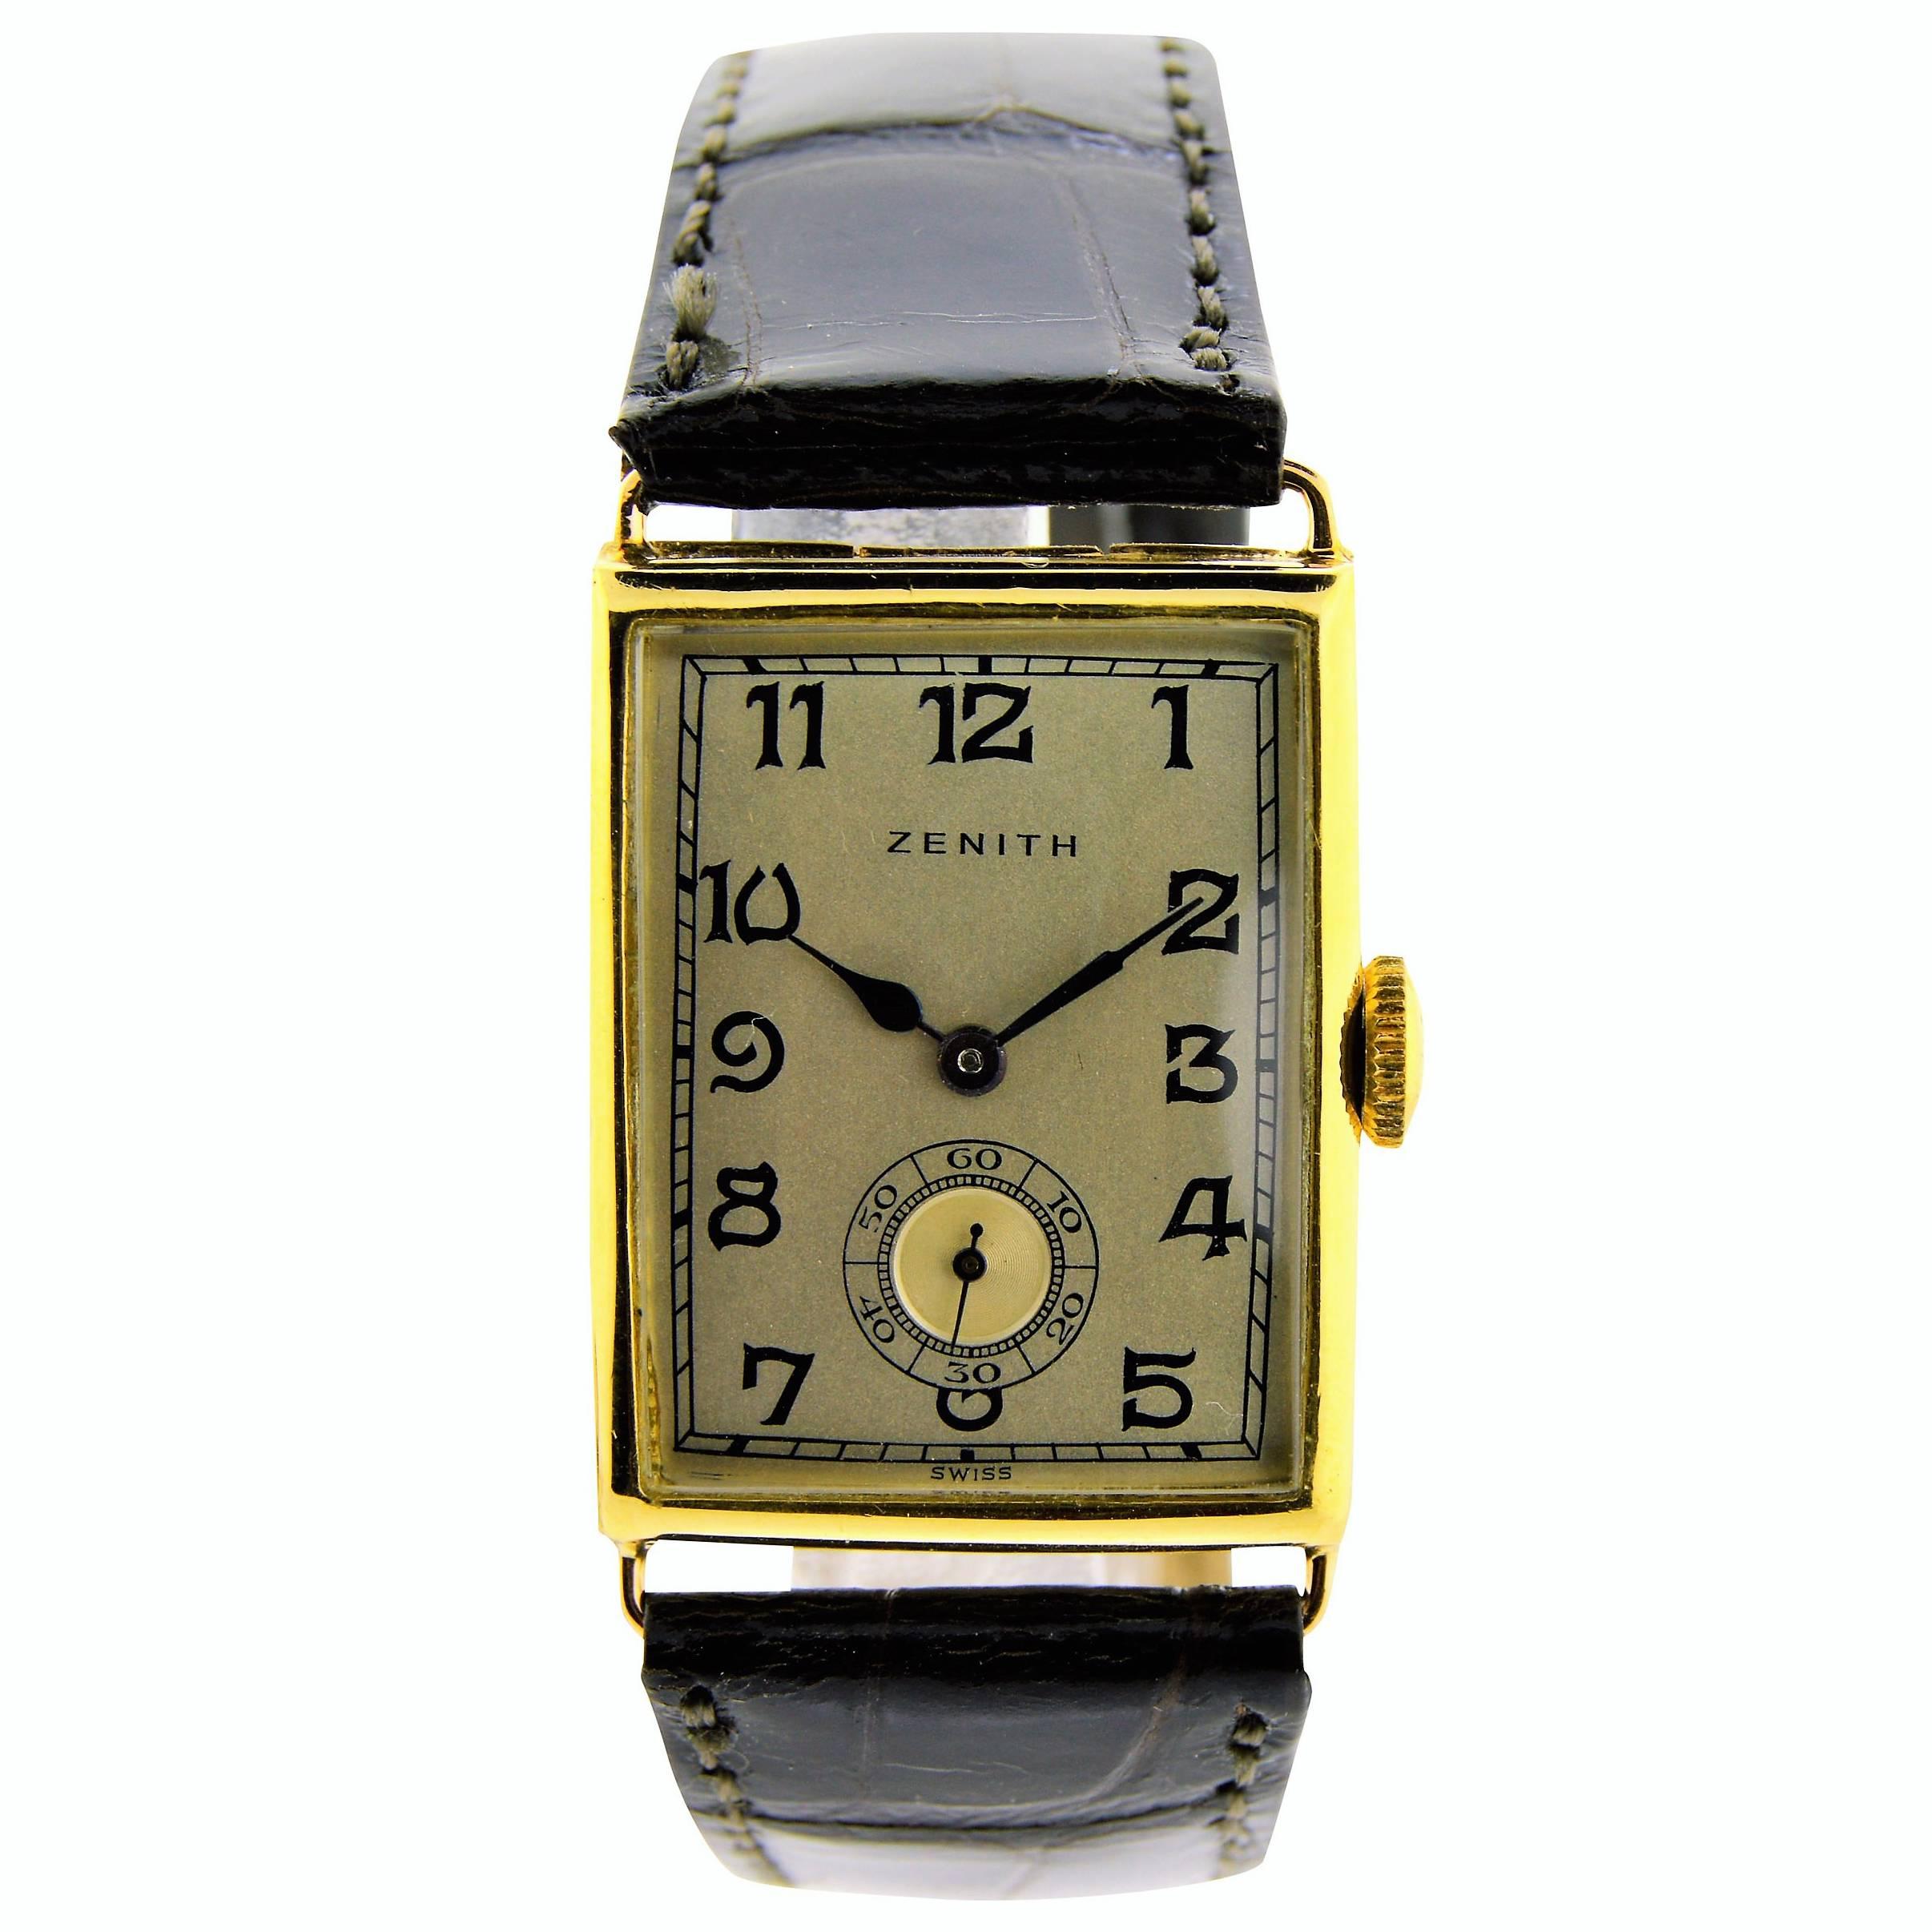 Zenith Gold Wrist Watch 1920's